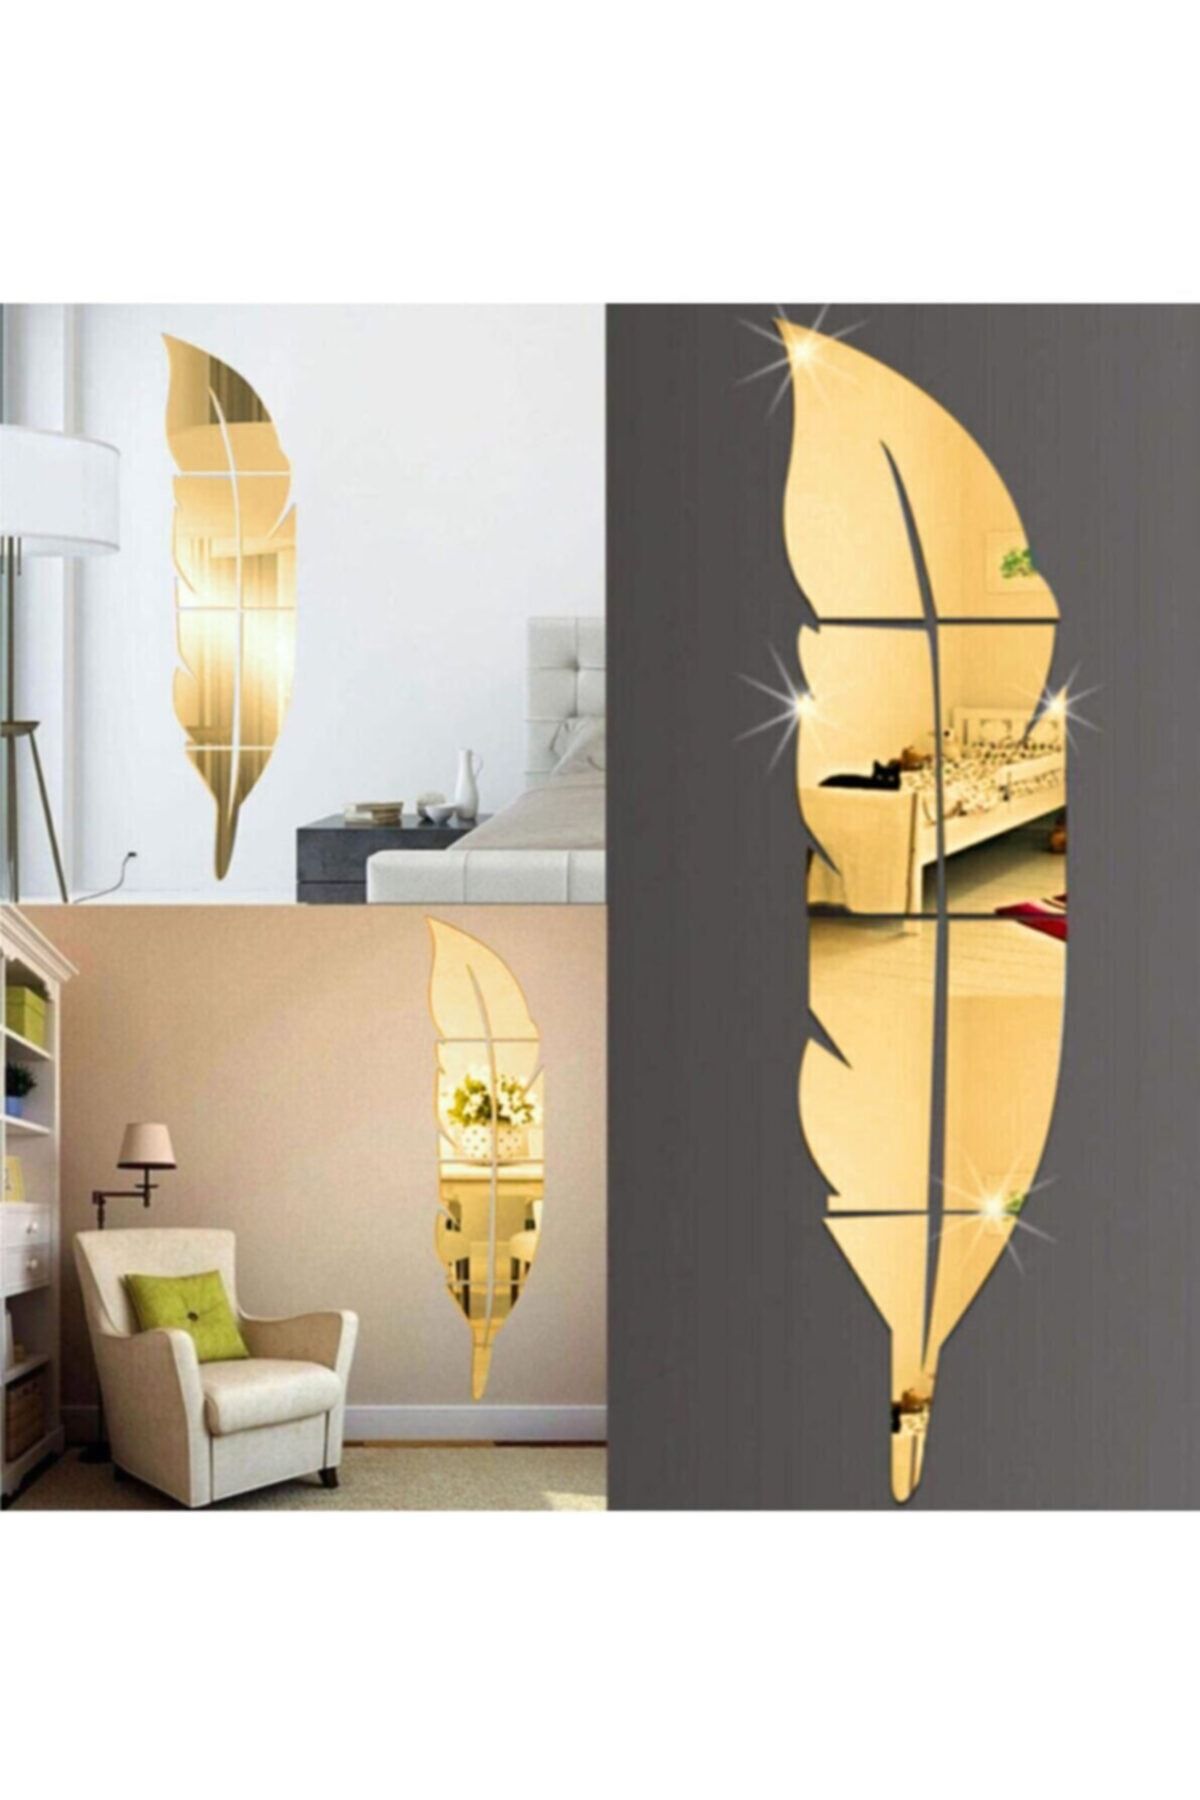 GİZEM SHOP Dekoratif Duvar Dekorasyon Tüy Desen Gold Ayna Pleksi 30*120cm